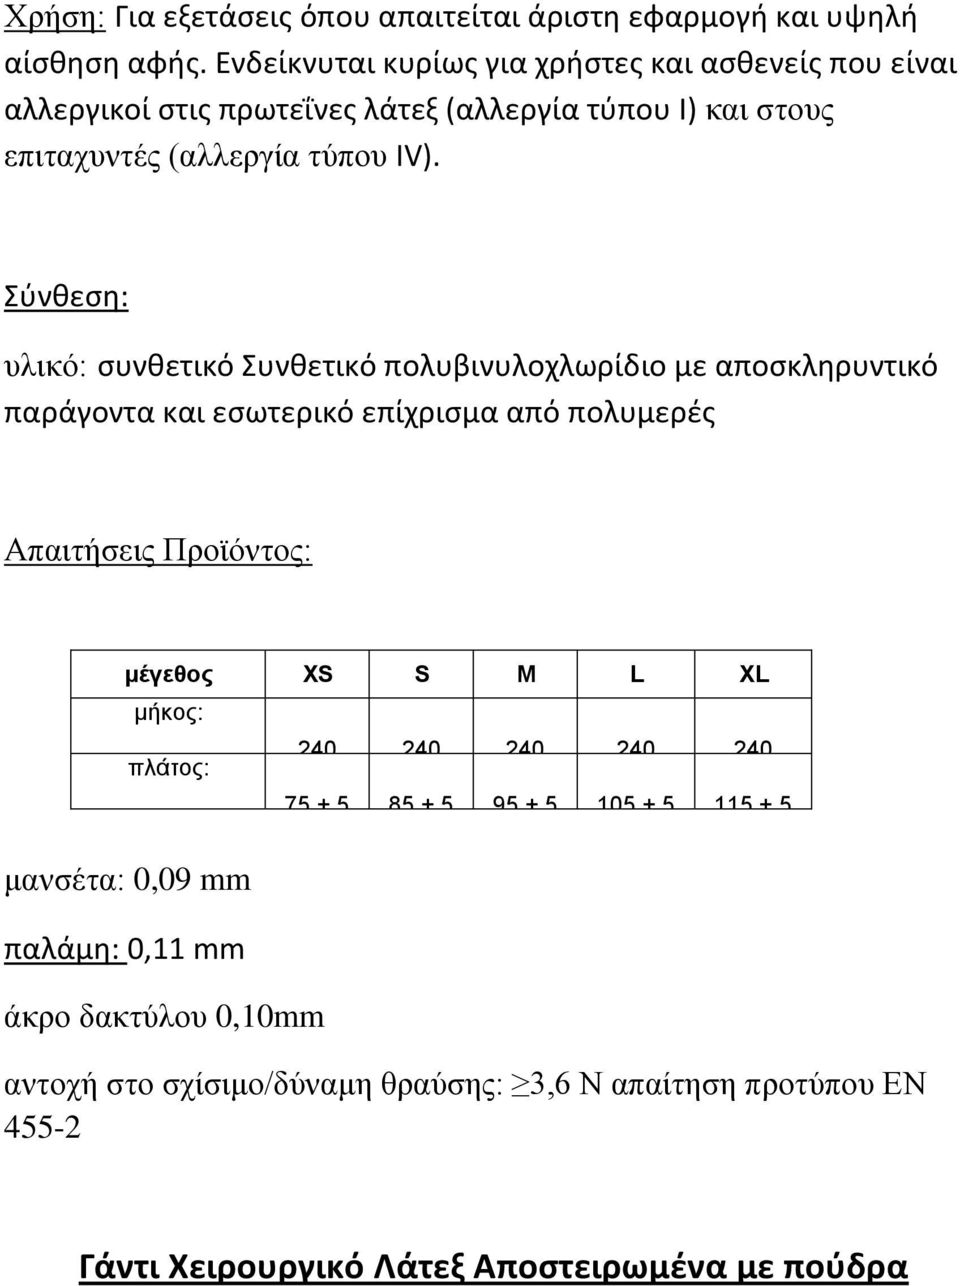 Σύνθεση: υλικό: συνθετικό Συνθετικό πολυβινυλοχλωρίδιο με αποσκληρυντικό παράγοντα και εσωτερικό επίχρισμα από πολυμερές Απαιτήσεις Προϊόντος: μέγεθος XS S M L